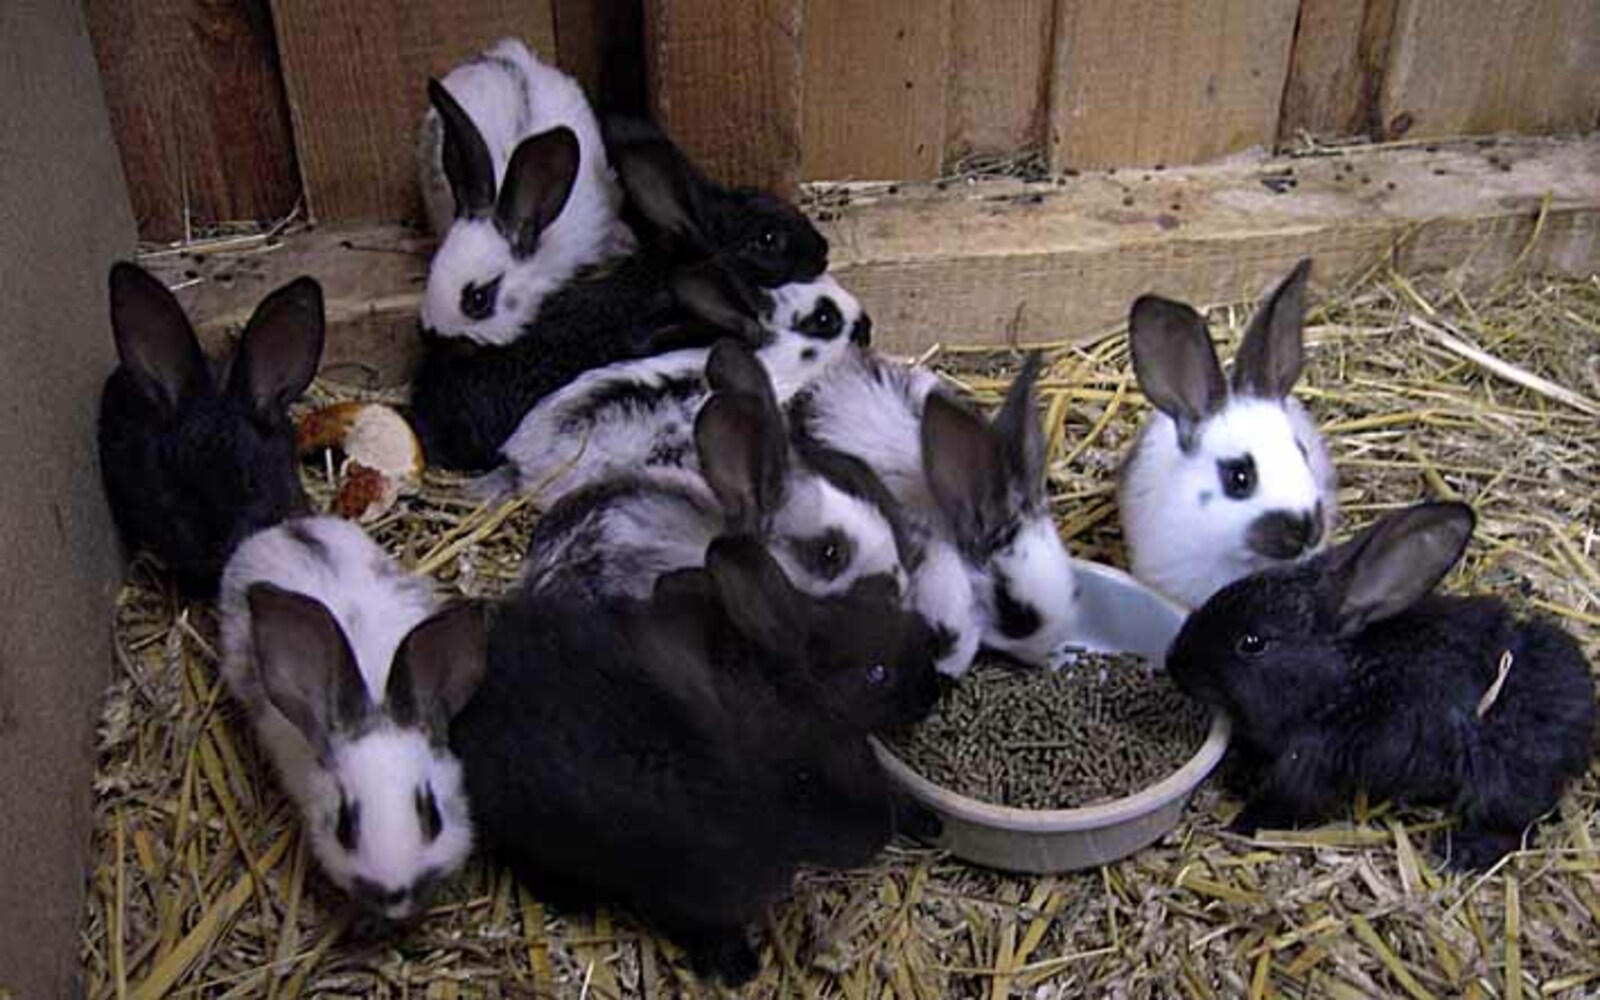 В питомнике живет несколько кроликов разного цвета